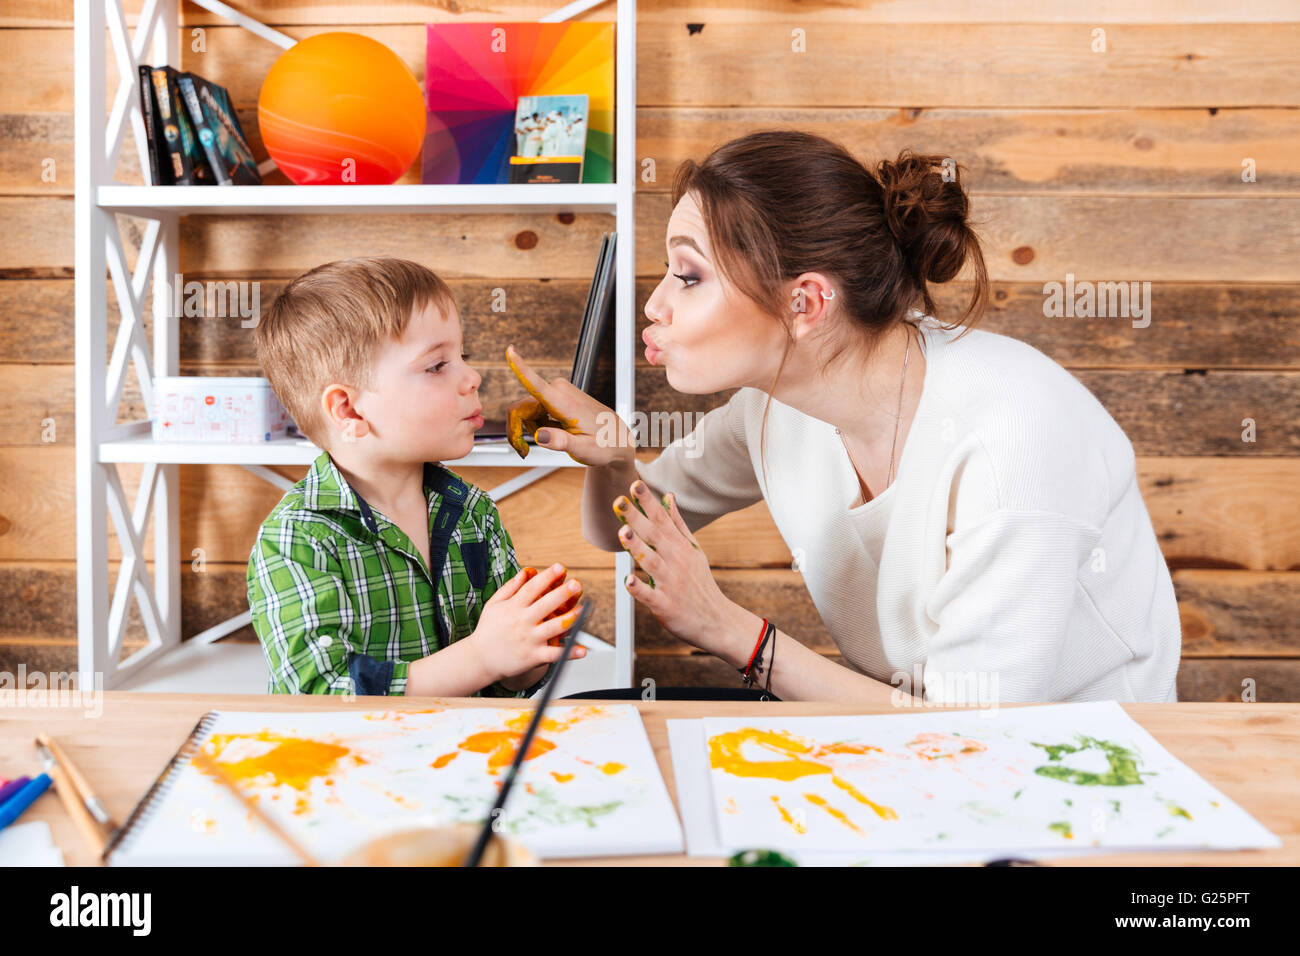 Glückliche Mutter berühren Gesicht ihres kleinen Sohnes mit Händen in bunten Farben bemalt und gemeinsam Spaß haben Stockfoto